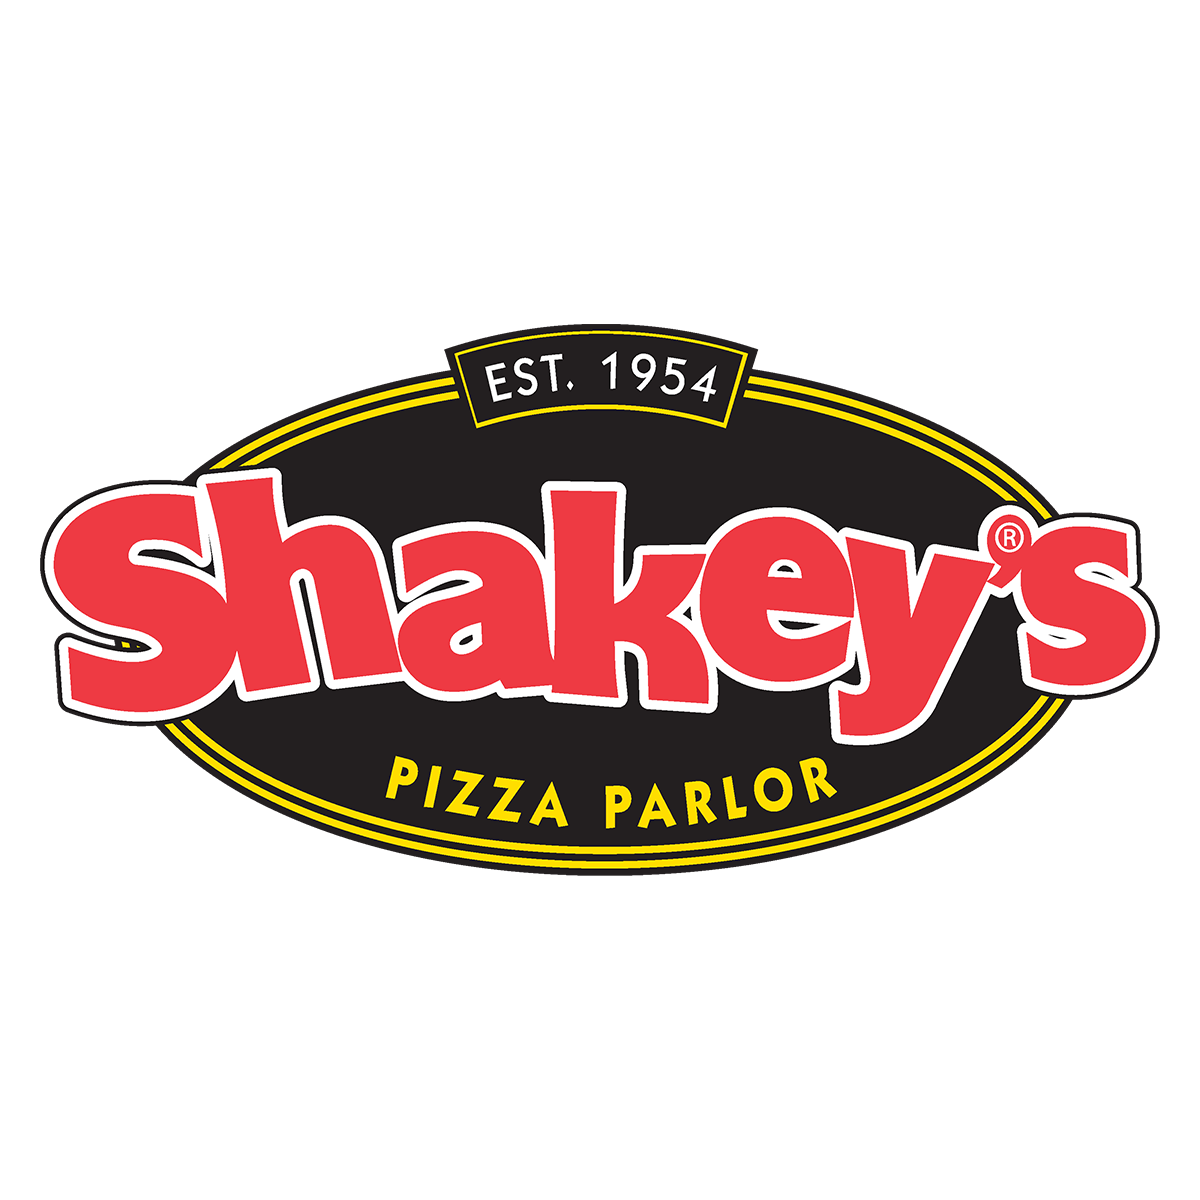 www.shakeys.com